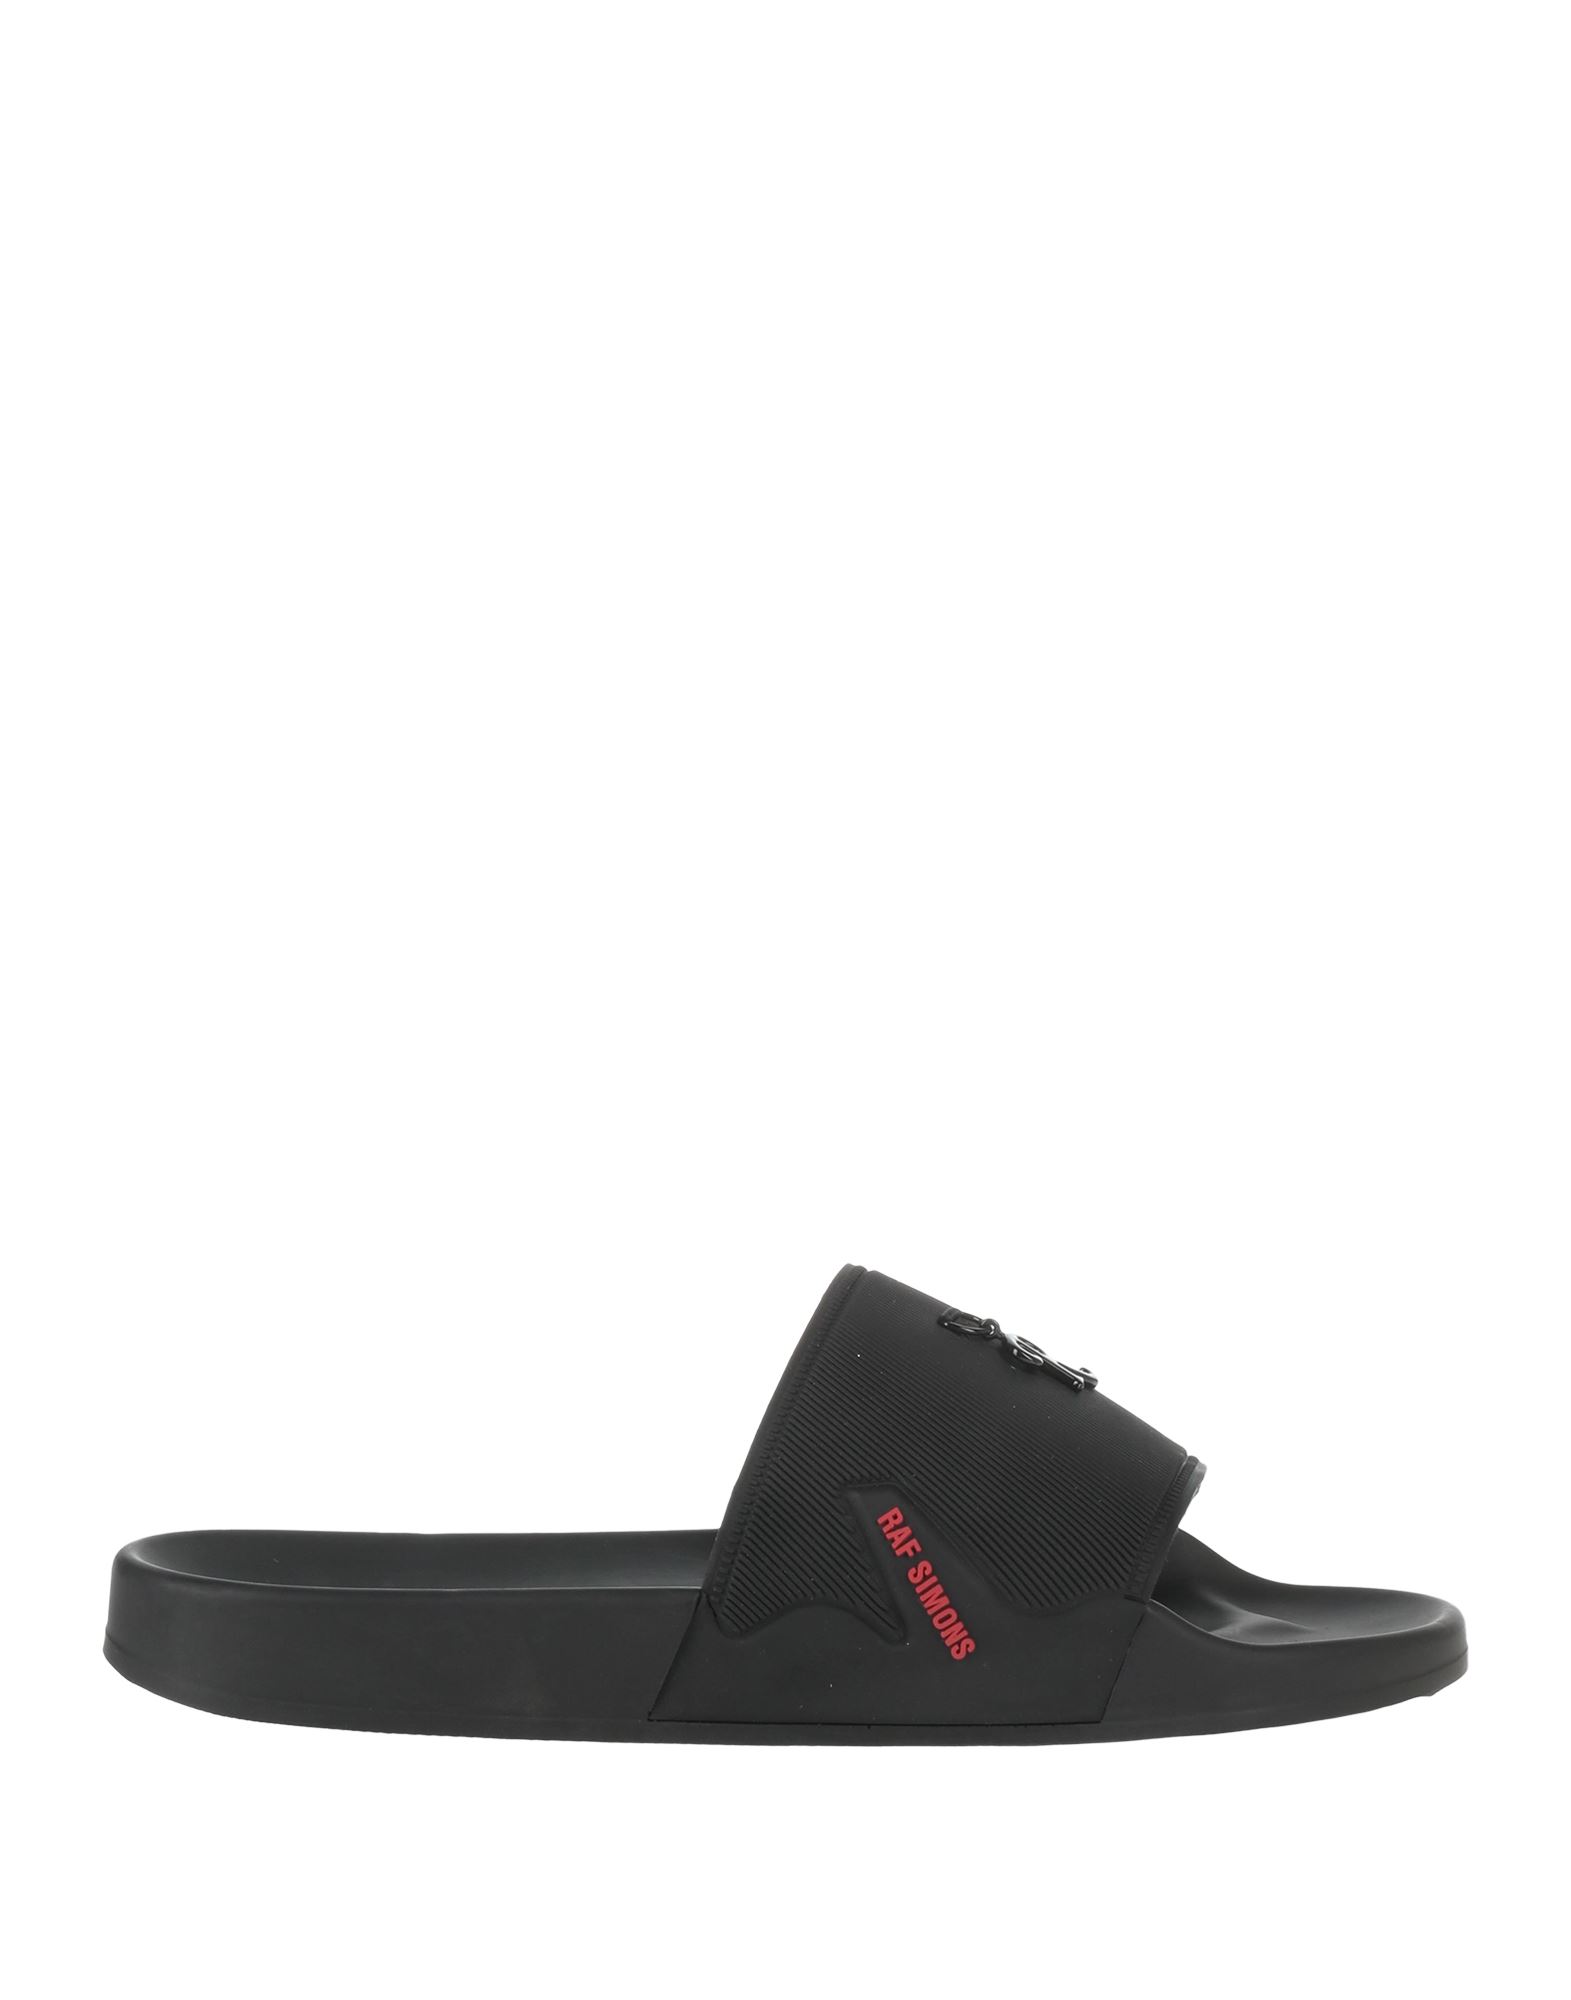 Shop Raf Simons Man Sandals Black Size 7 Rubber